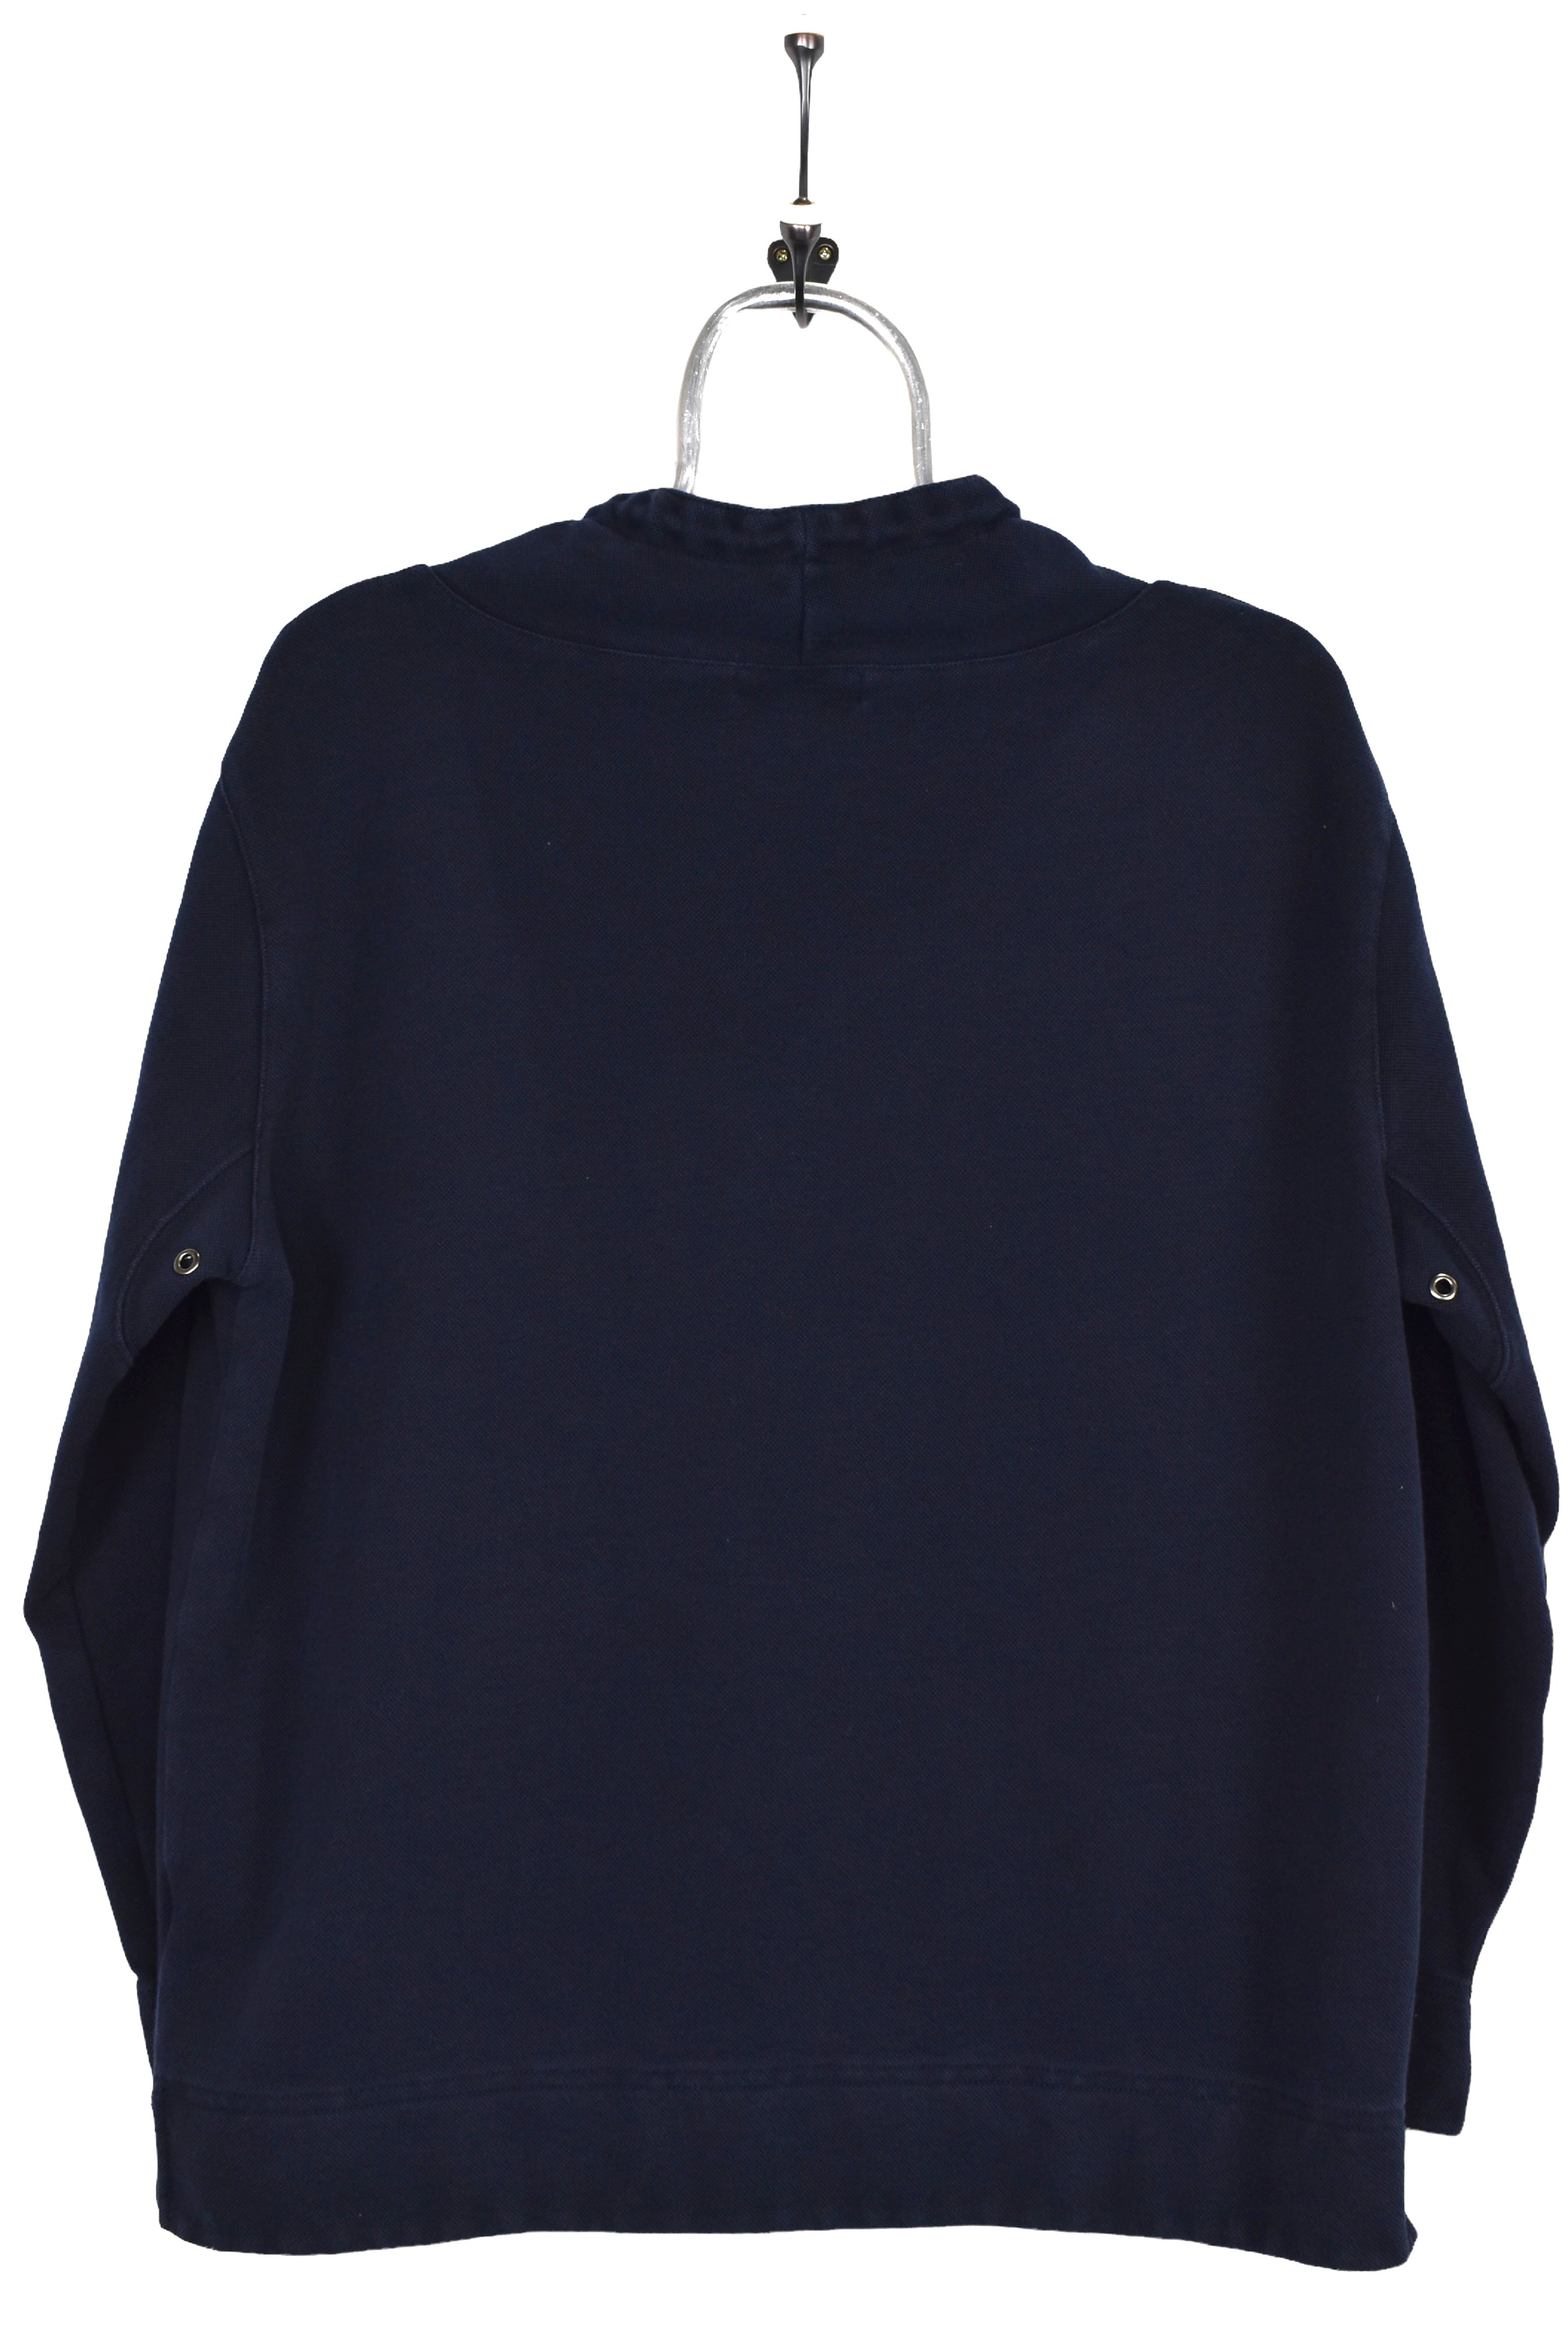 Vintage Ralph Lauren sweatshirt, navy blue turtleneck - Medium